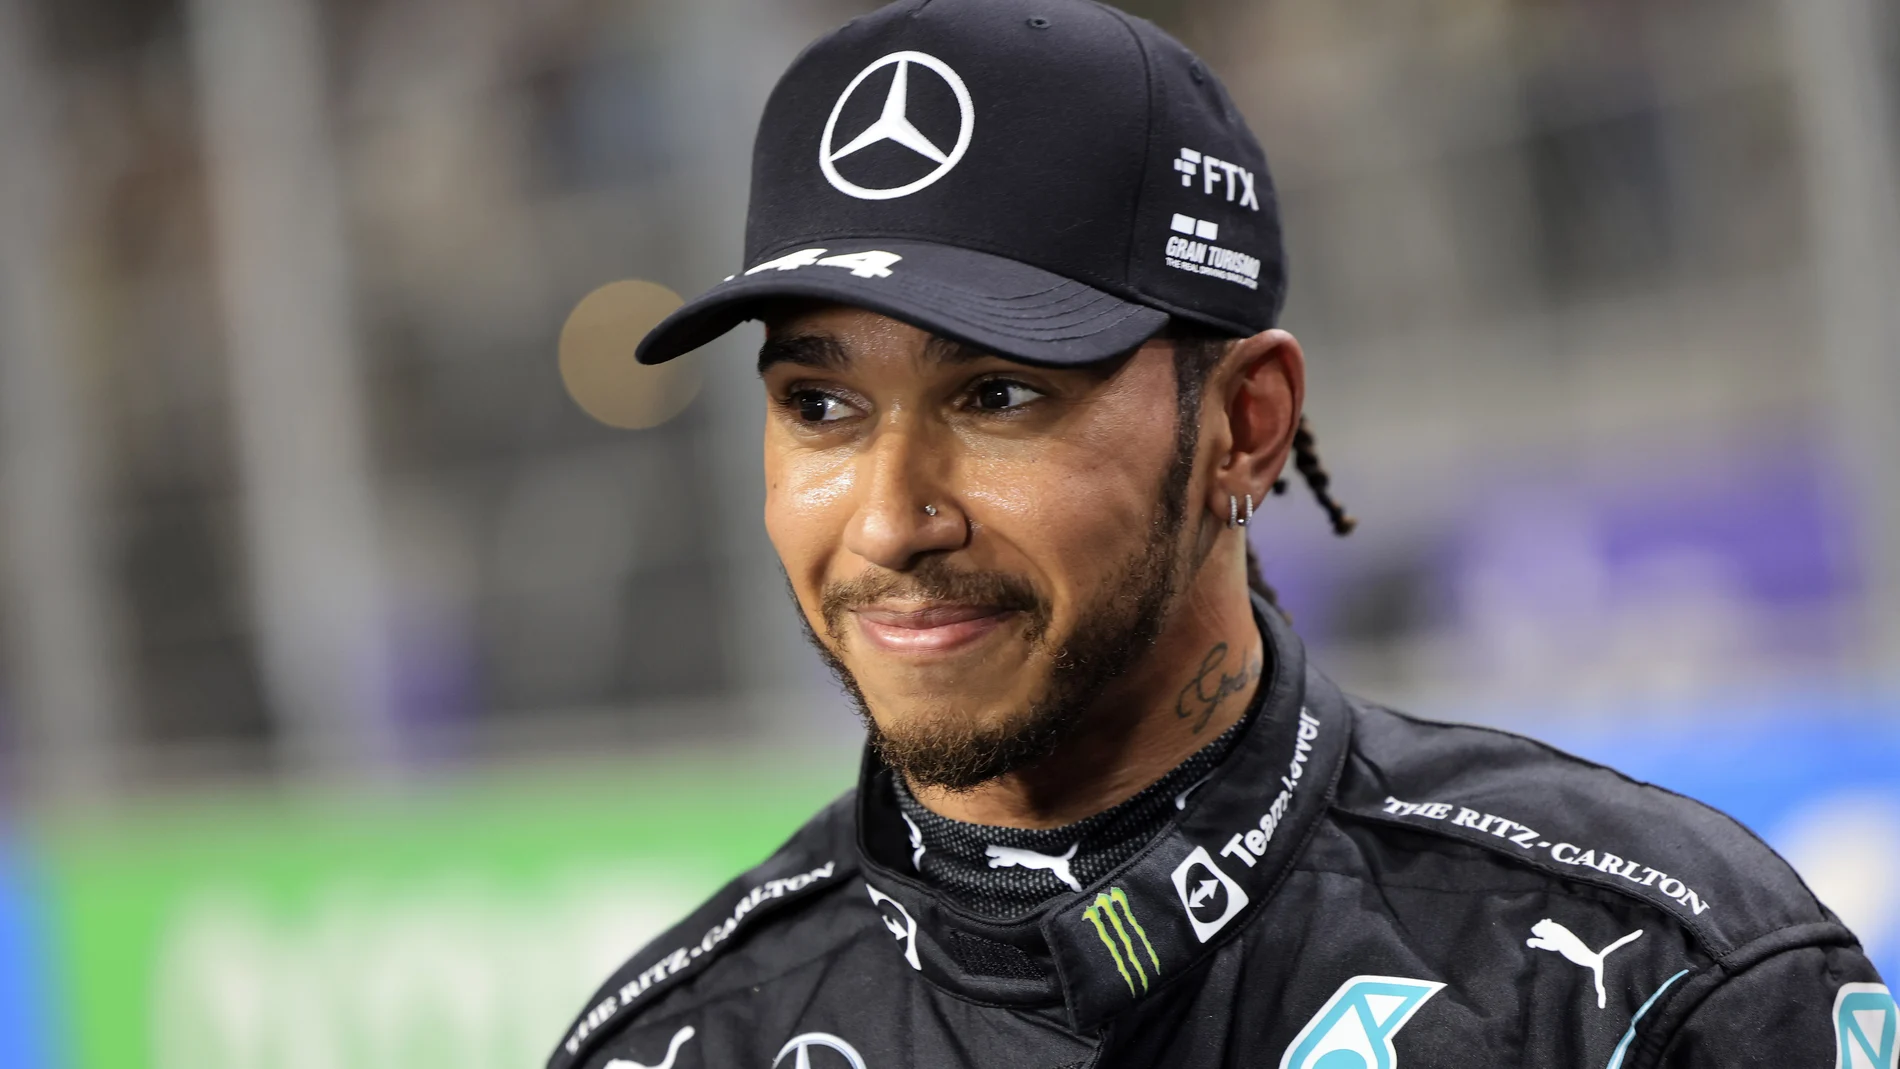 Lewis Hamilton, piloto de Fórmula 1 de la escudería Mercedes.